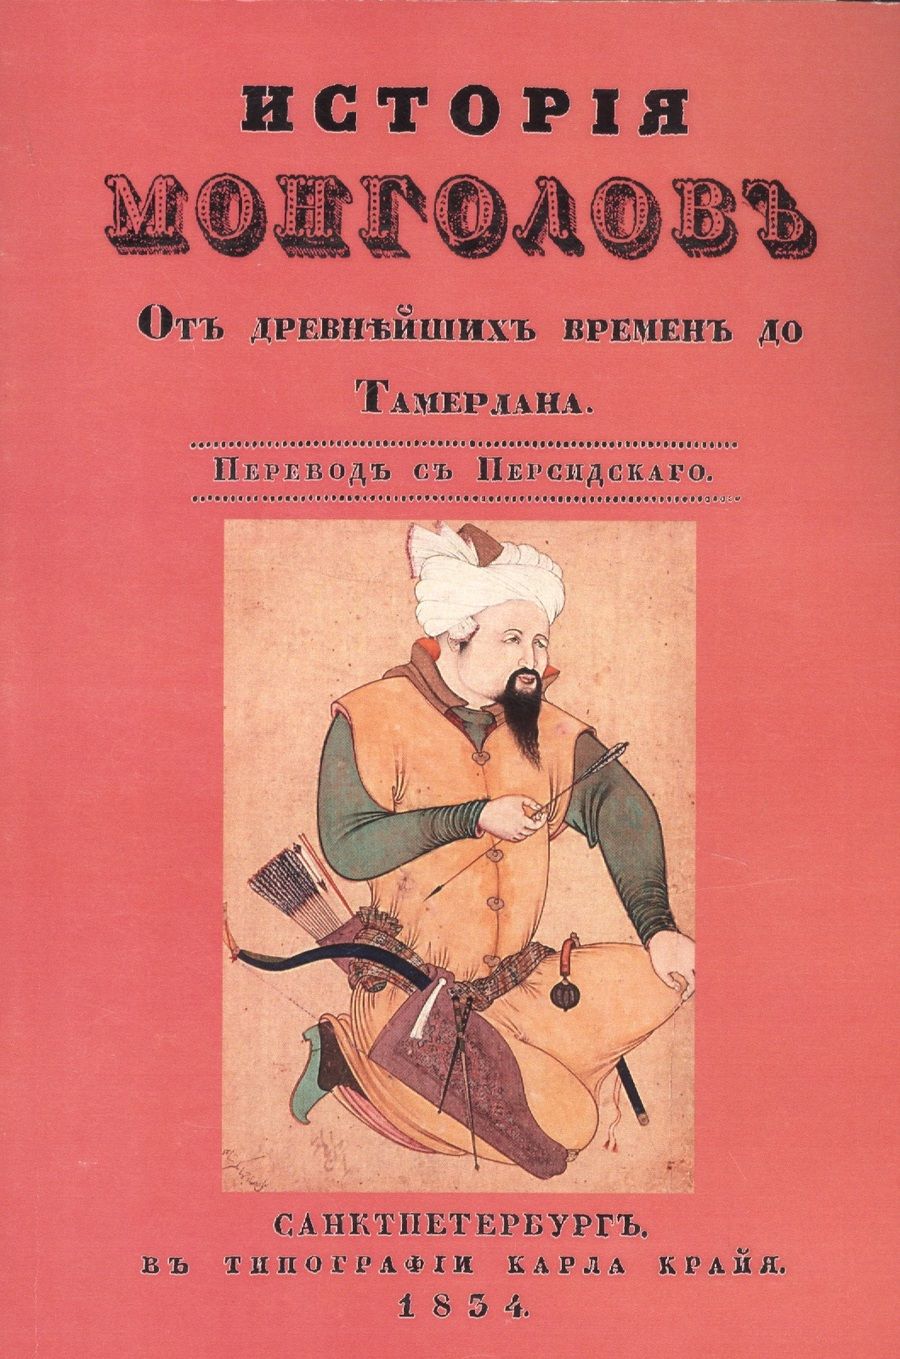 Обложка книги "История монголов. От древнейших времен до Тамерлана"